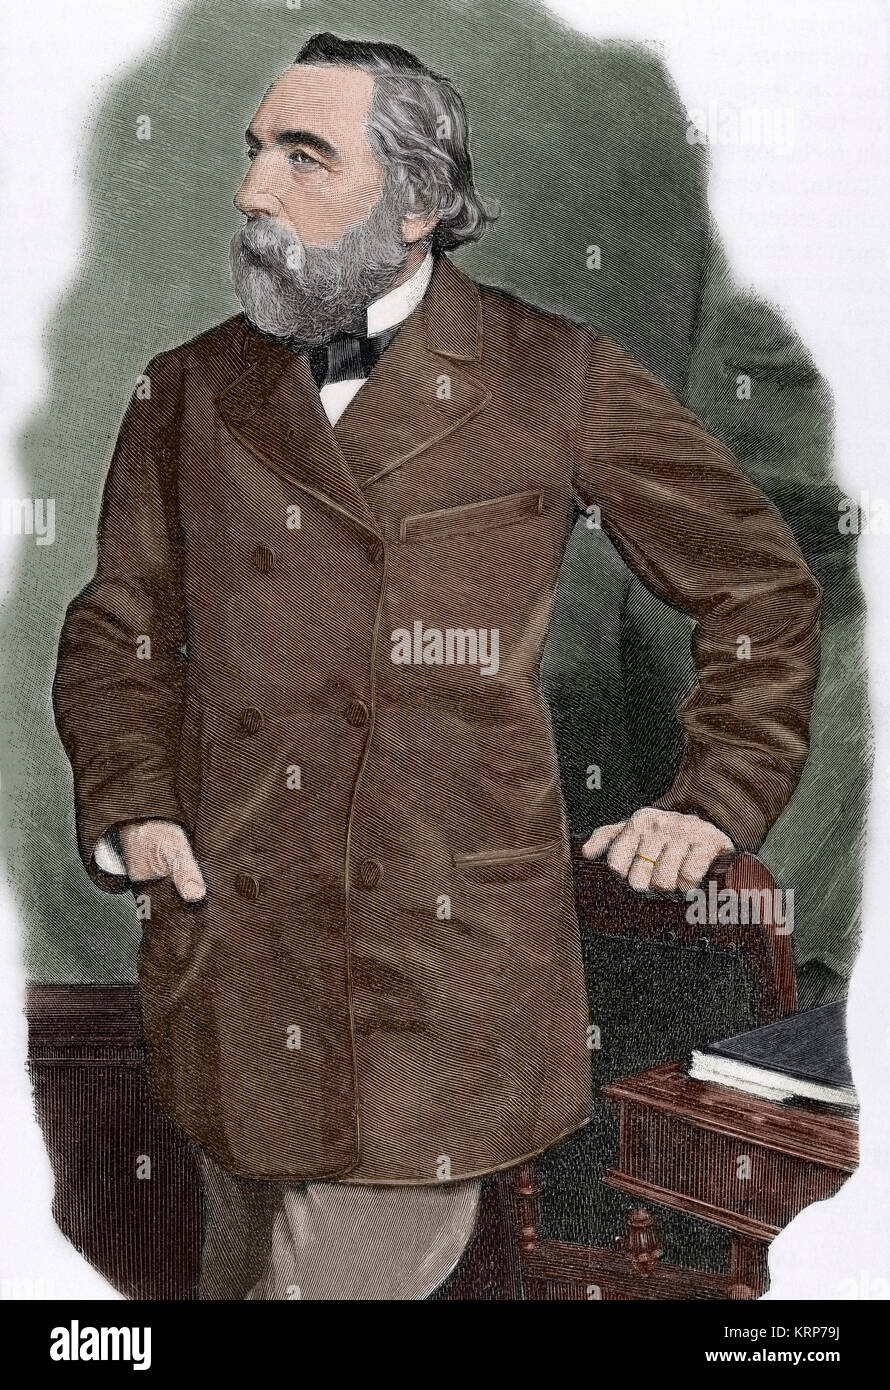 Ion Ghica (1816-1897). La révolution roumaine, mathématicien, diplomate et homme politique. Il a été Premier Ministre de la Roumanie 5 fois. Portrait. La gravure. De couleur. Banque D'Images